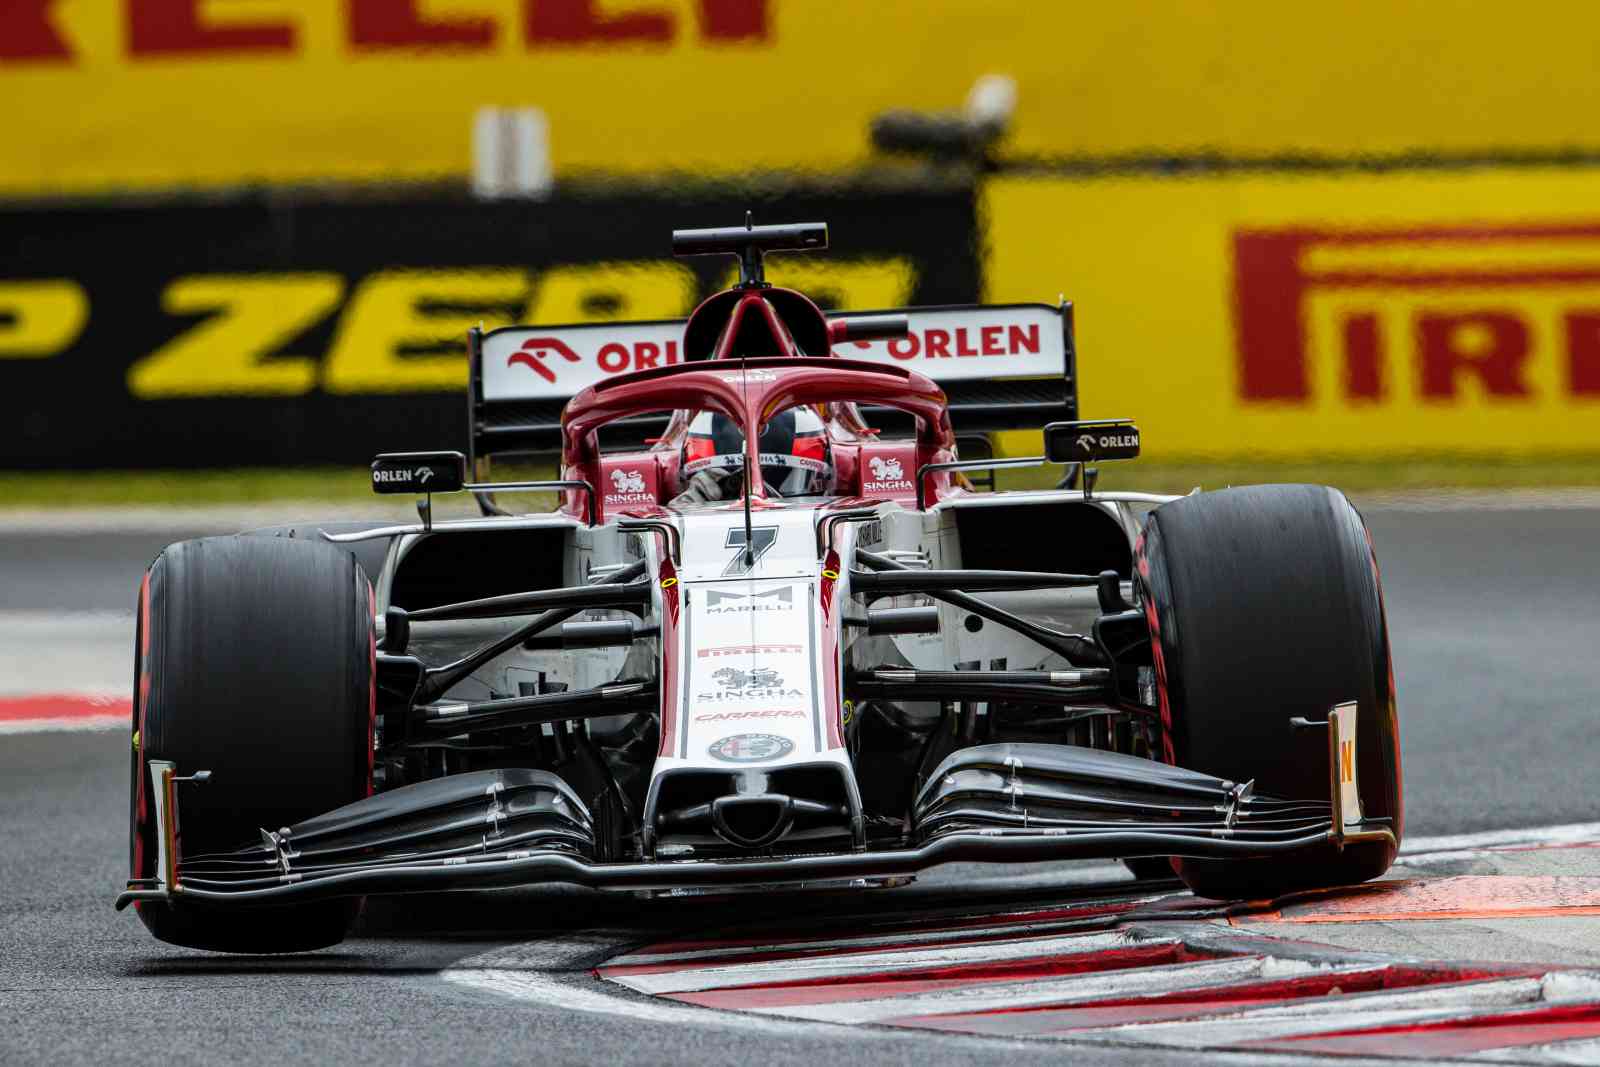 Kimi Räikkönen teve um dia ruim e larga na última posição